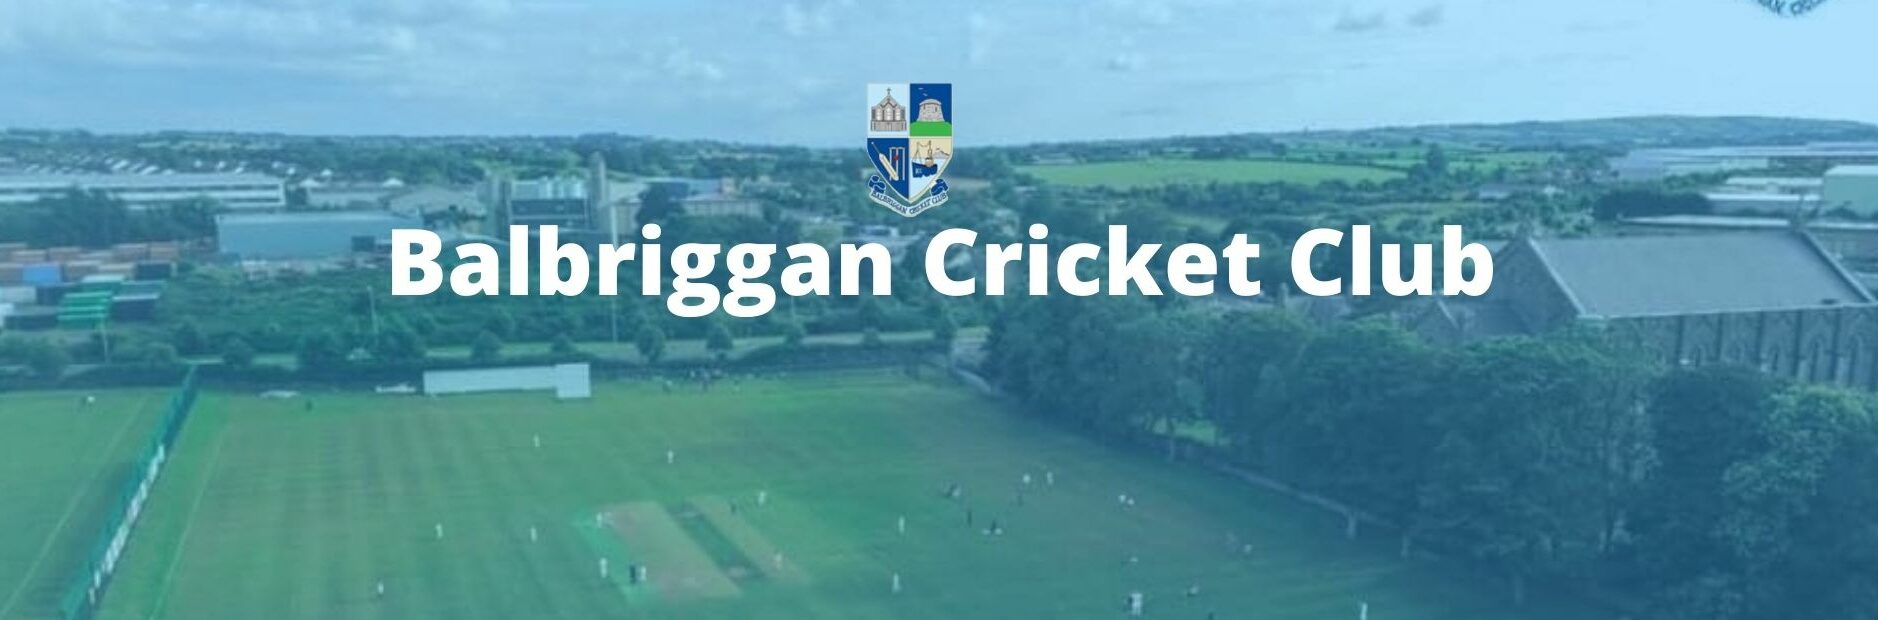 cropped-Balbriggan-Cricket-Club-3.jpg